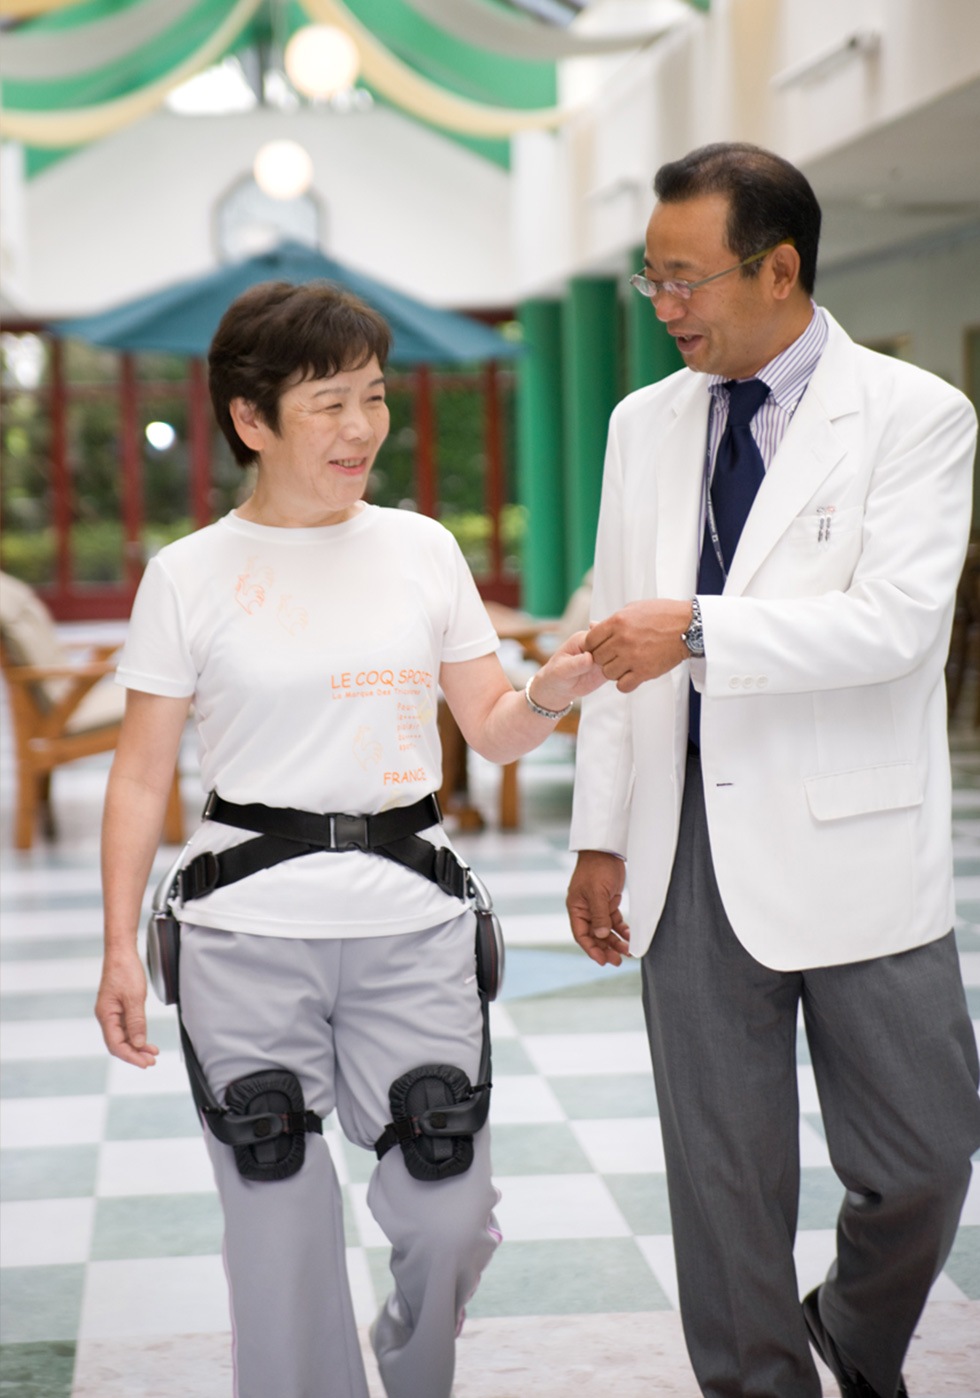 Rehabilitation training with Honda's walking assist device (image)